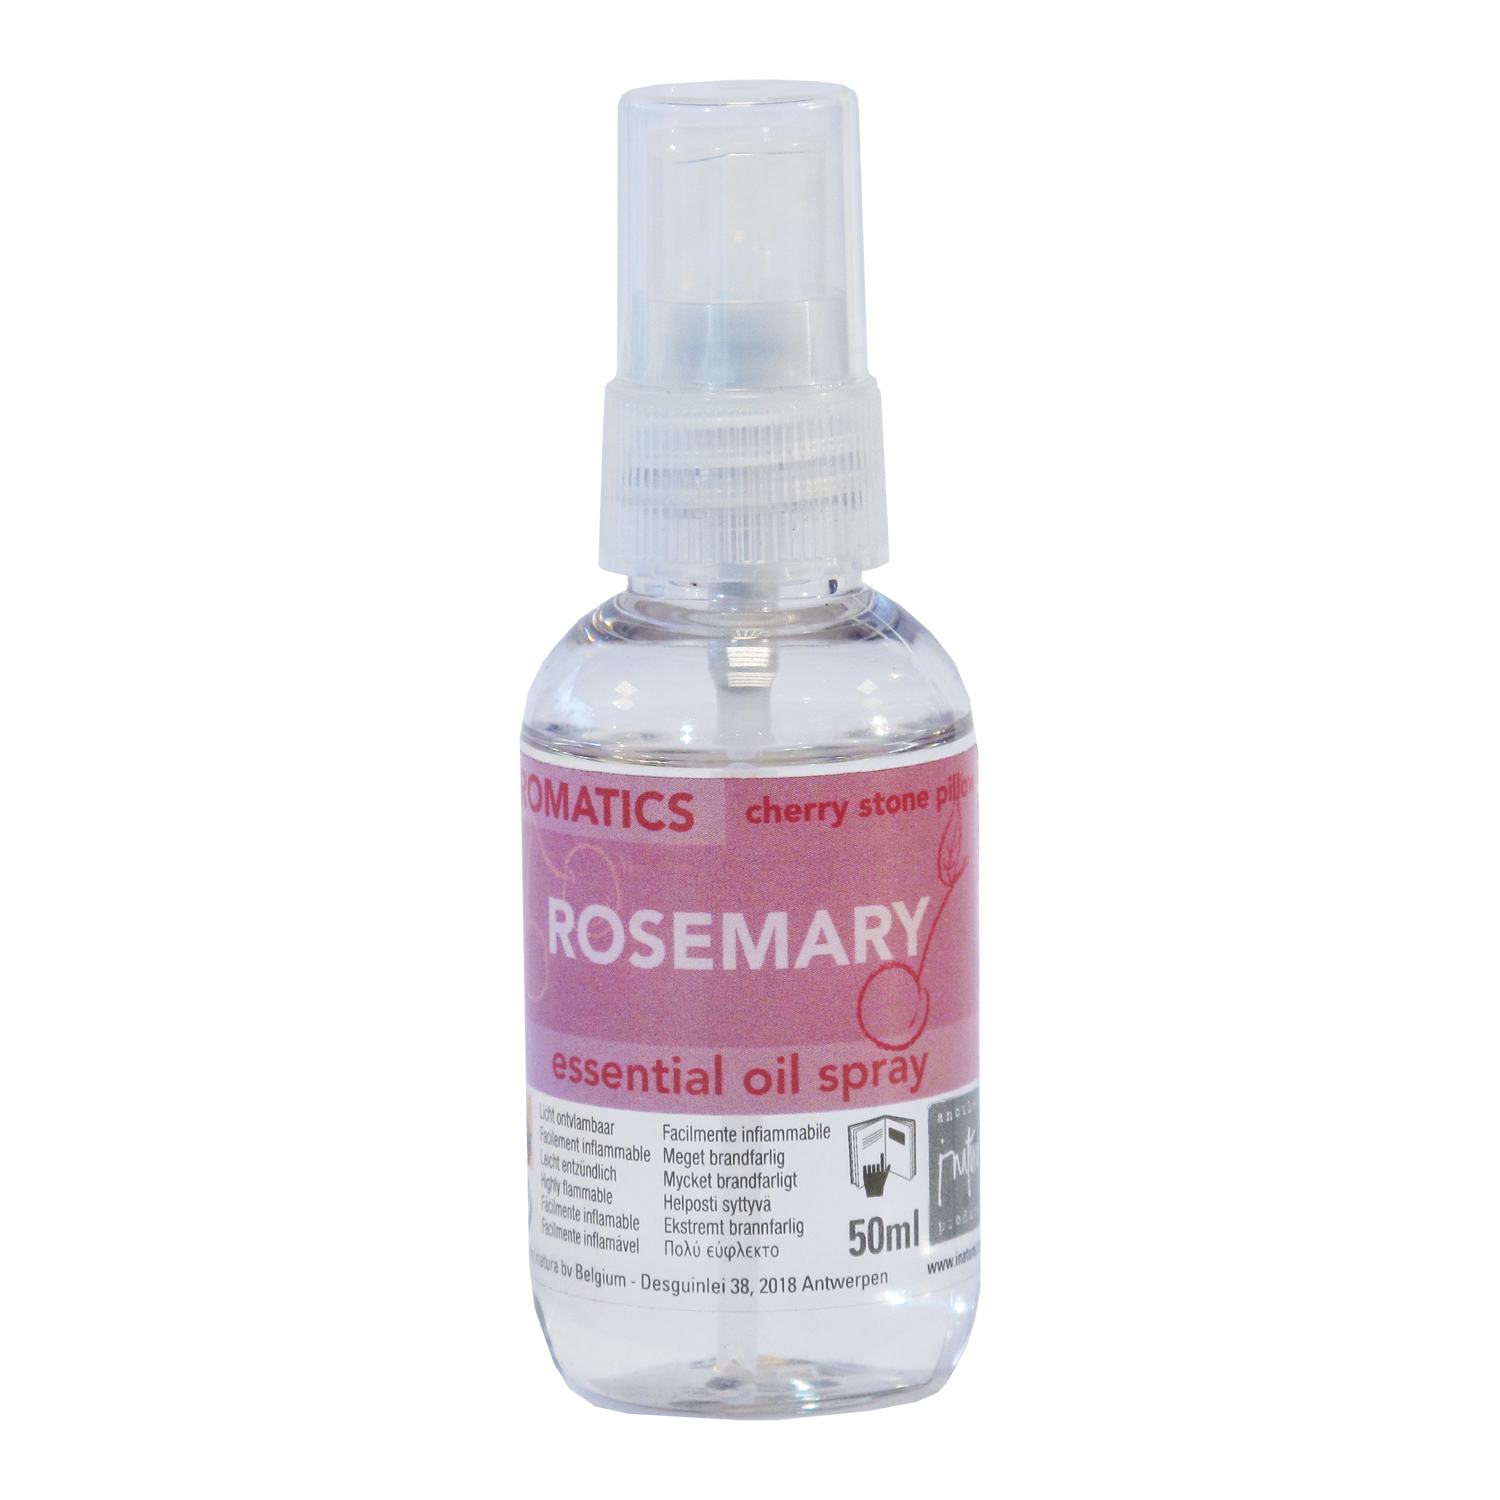 Rosemary spray